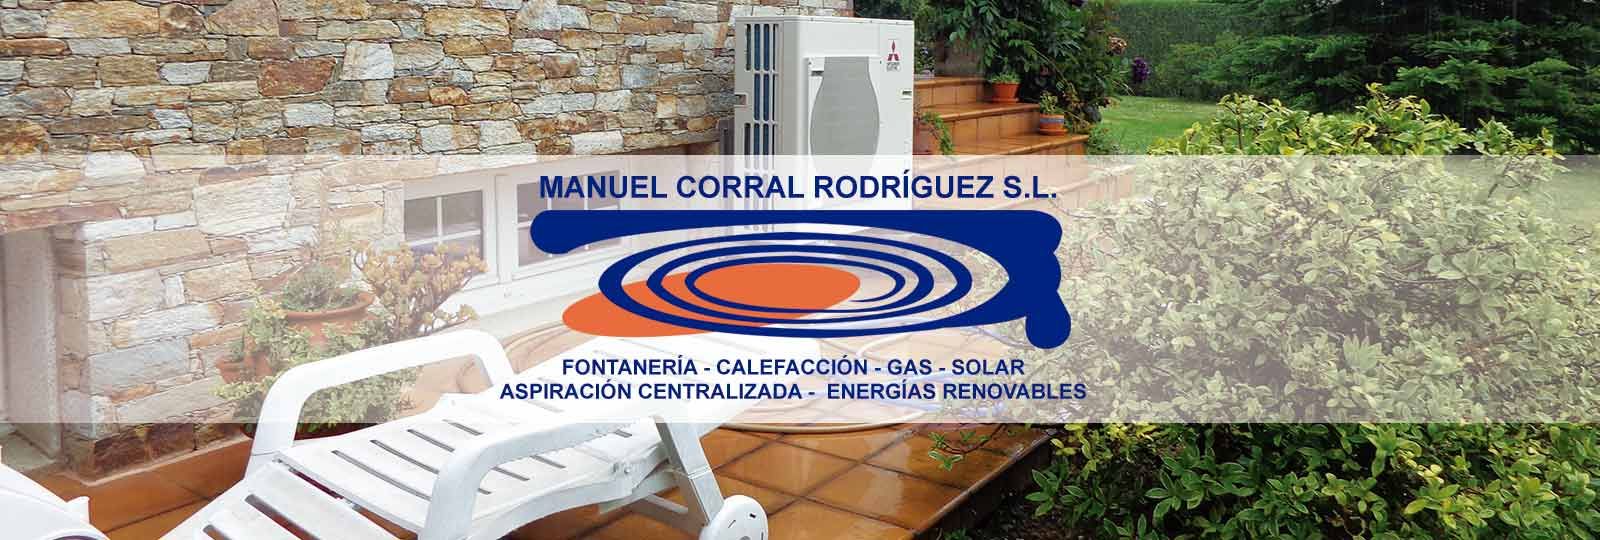 Manuel Corral Rodriguez Portada